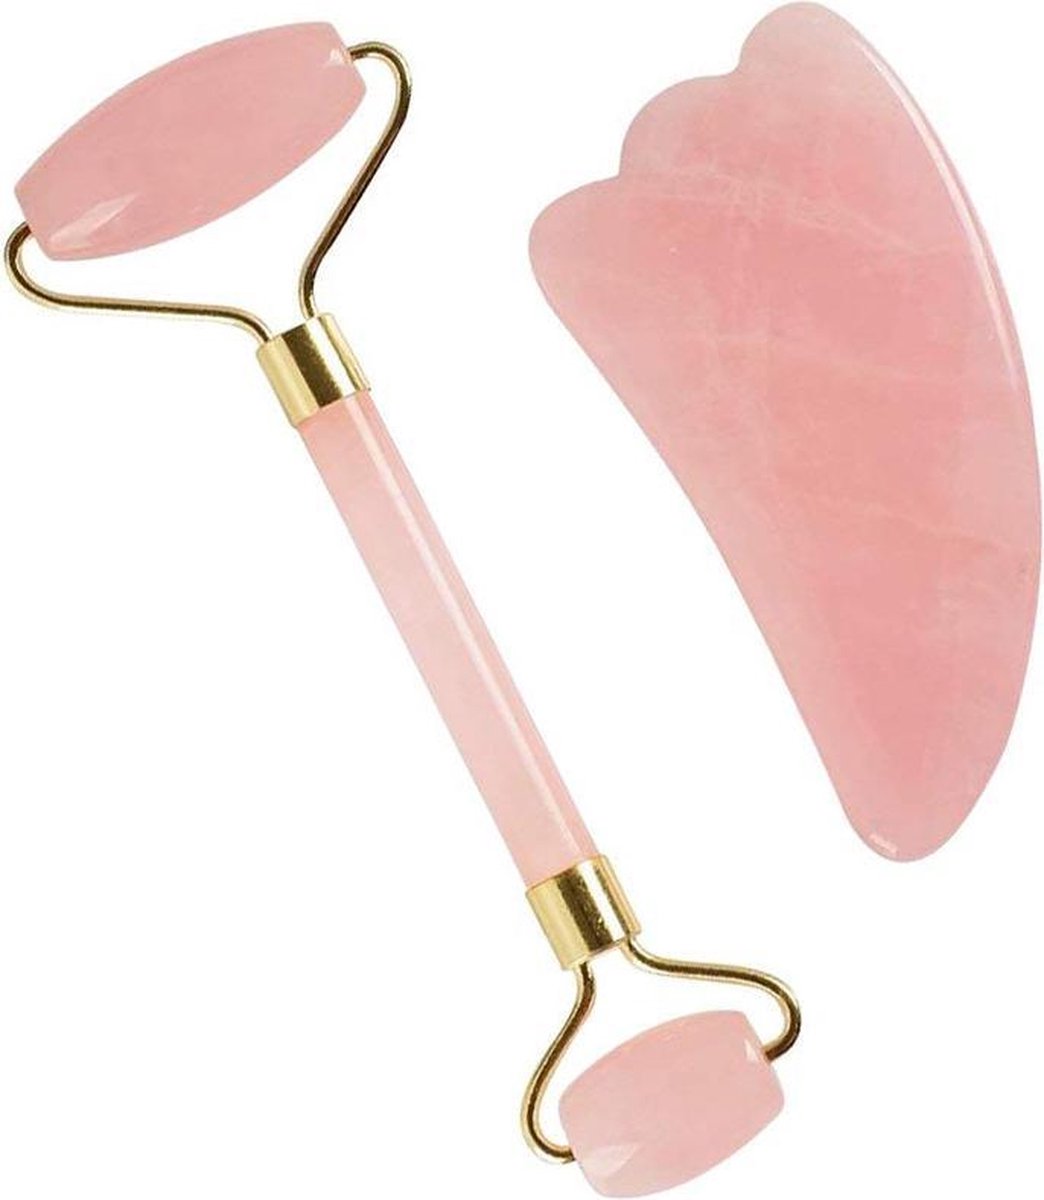 KELERINO Jade Roller Gezichtsmassage Roller - met gua sha steen - roze